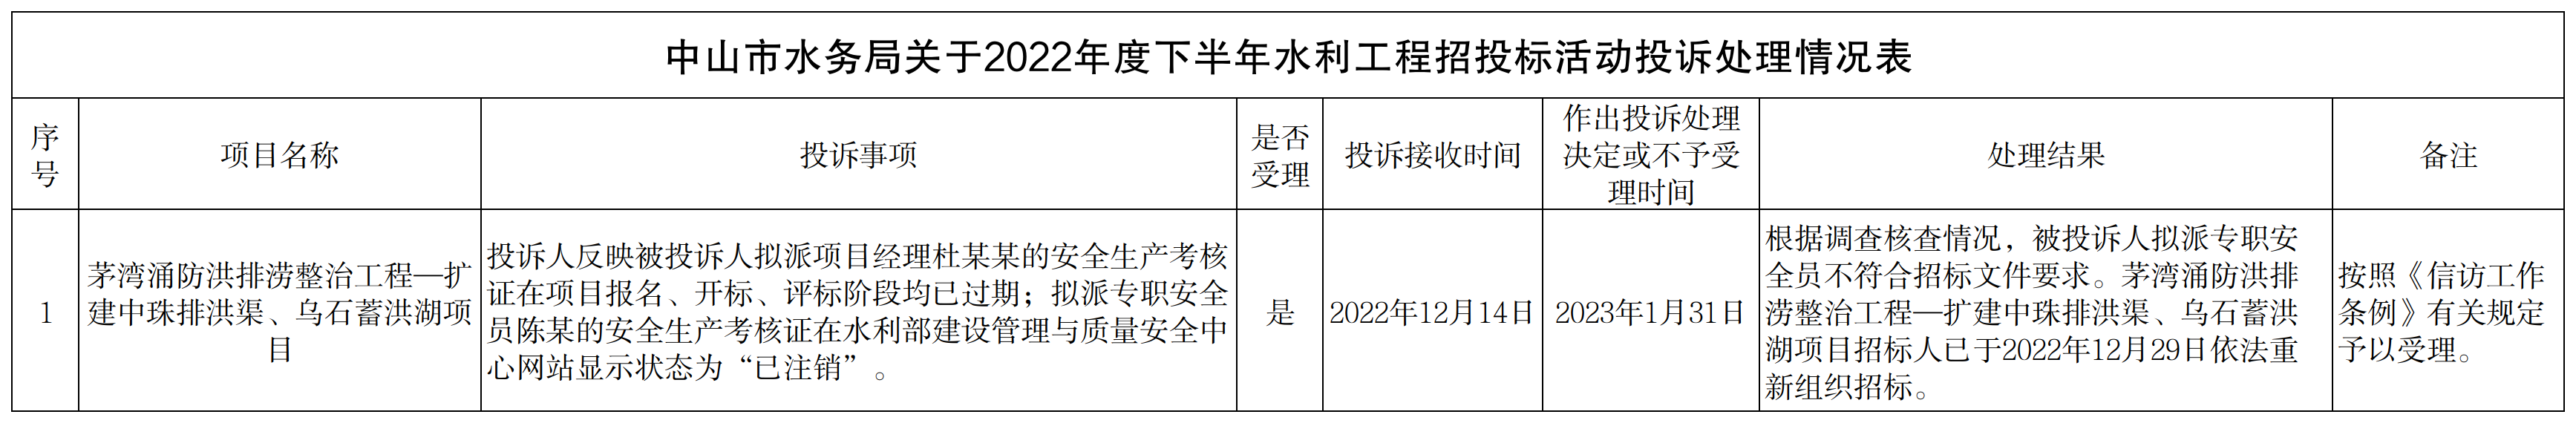 中山市水务局关于2022年度下半年水利工程招投标活动投诉处理情况表.png